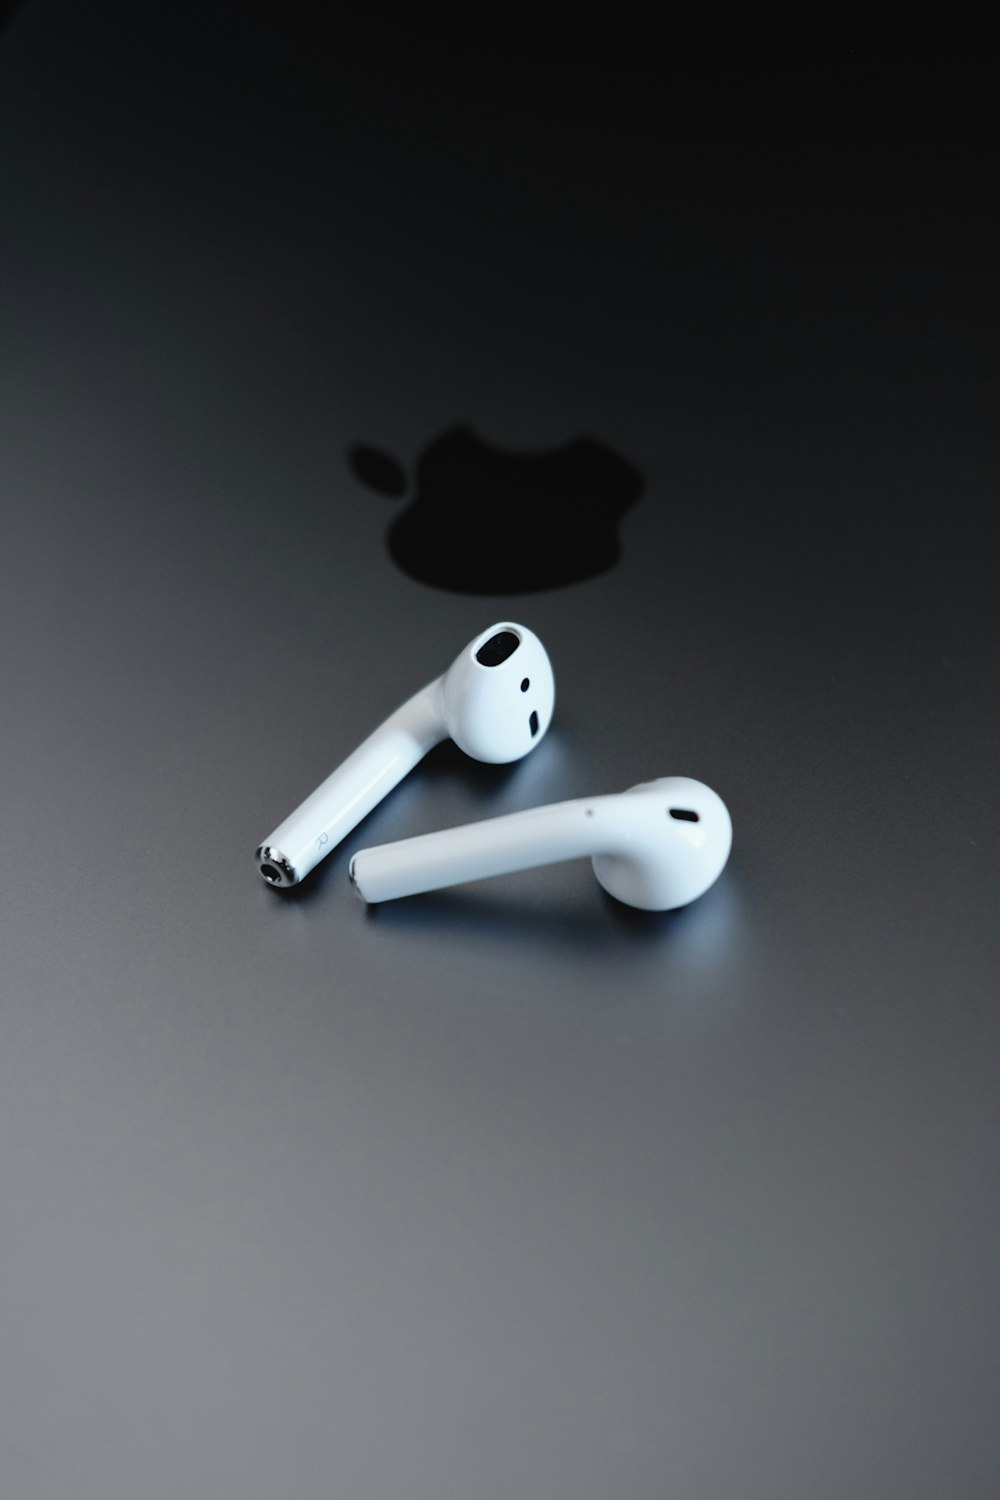 회색 표면의 Apple EarPods